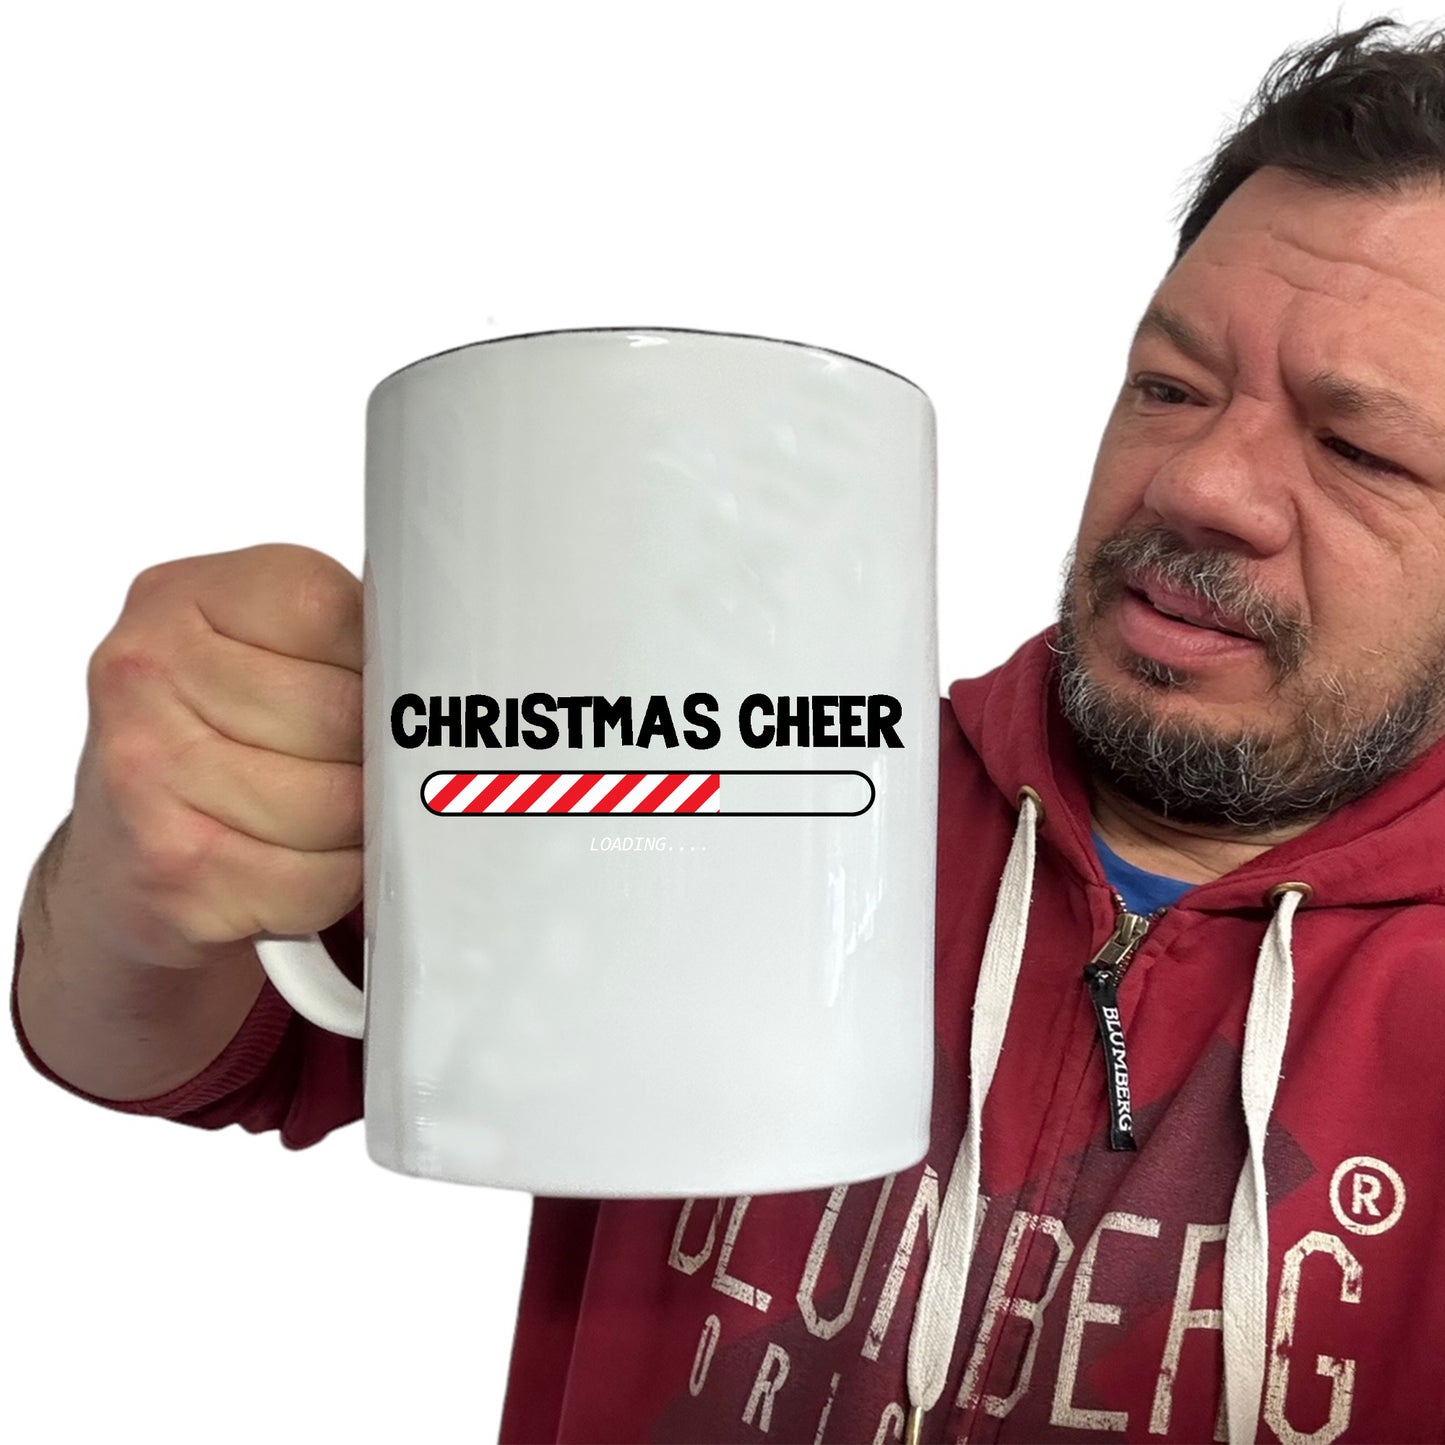 The Christmas Hub - Xmas Christmas Cheer Loading - Funny Giant 2 Litre Mug